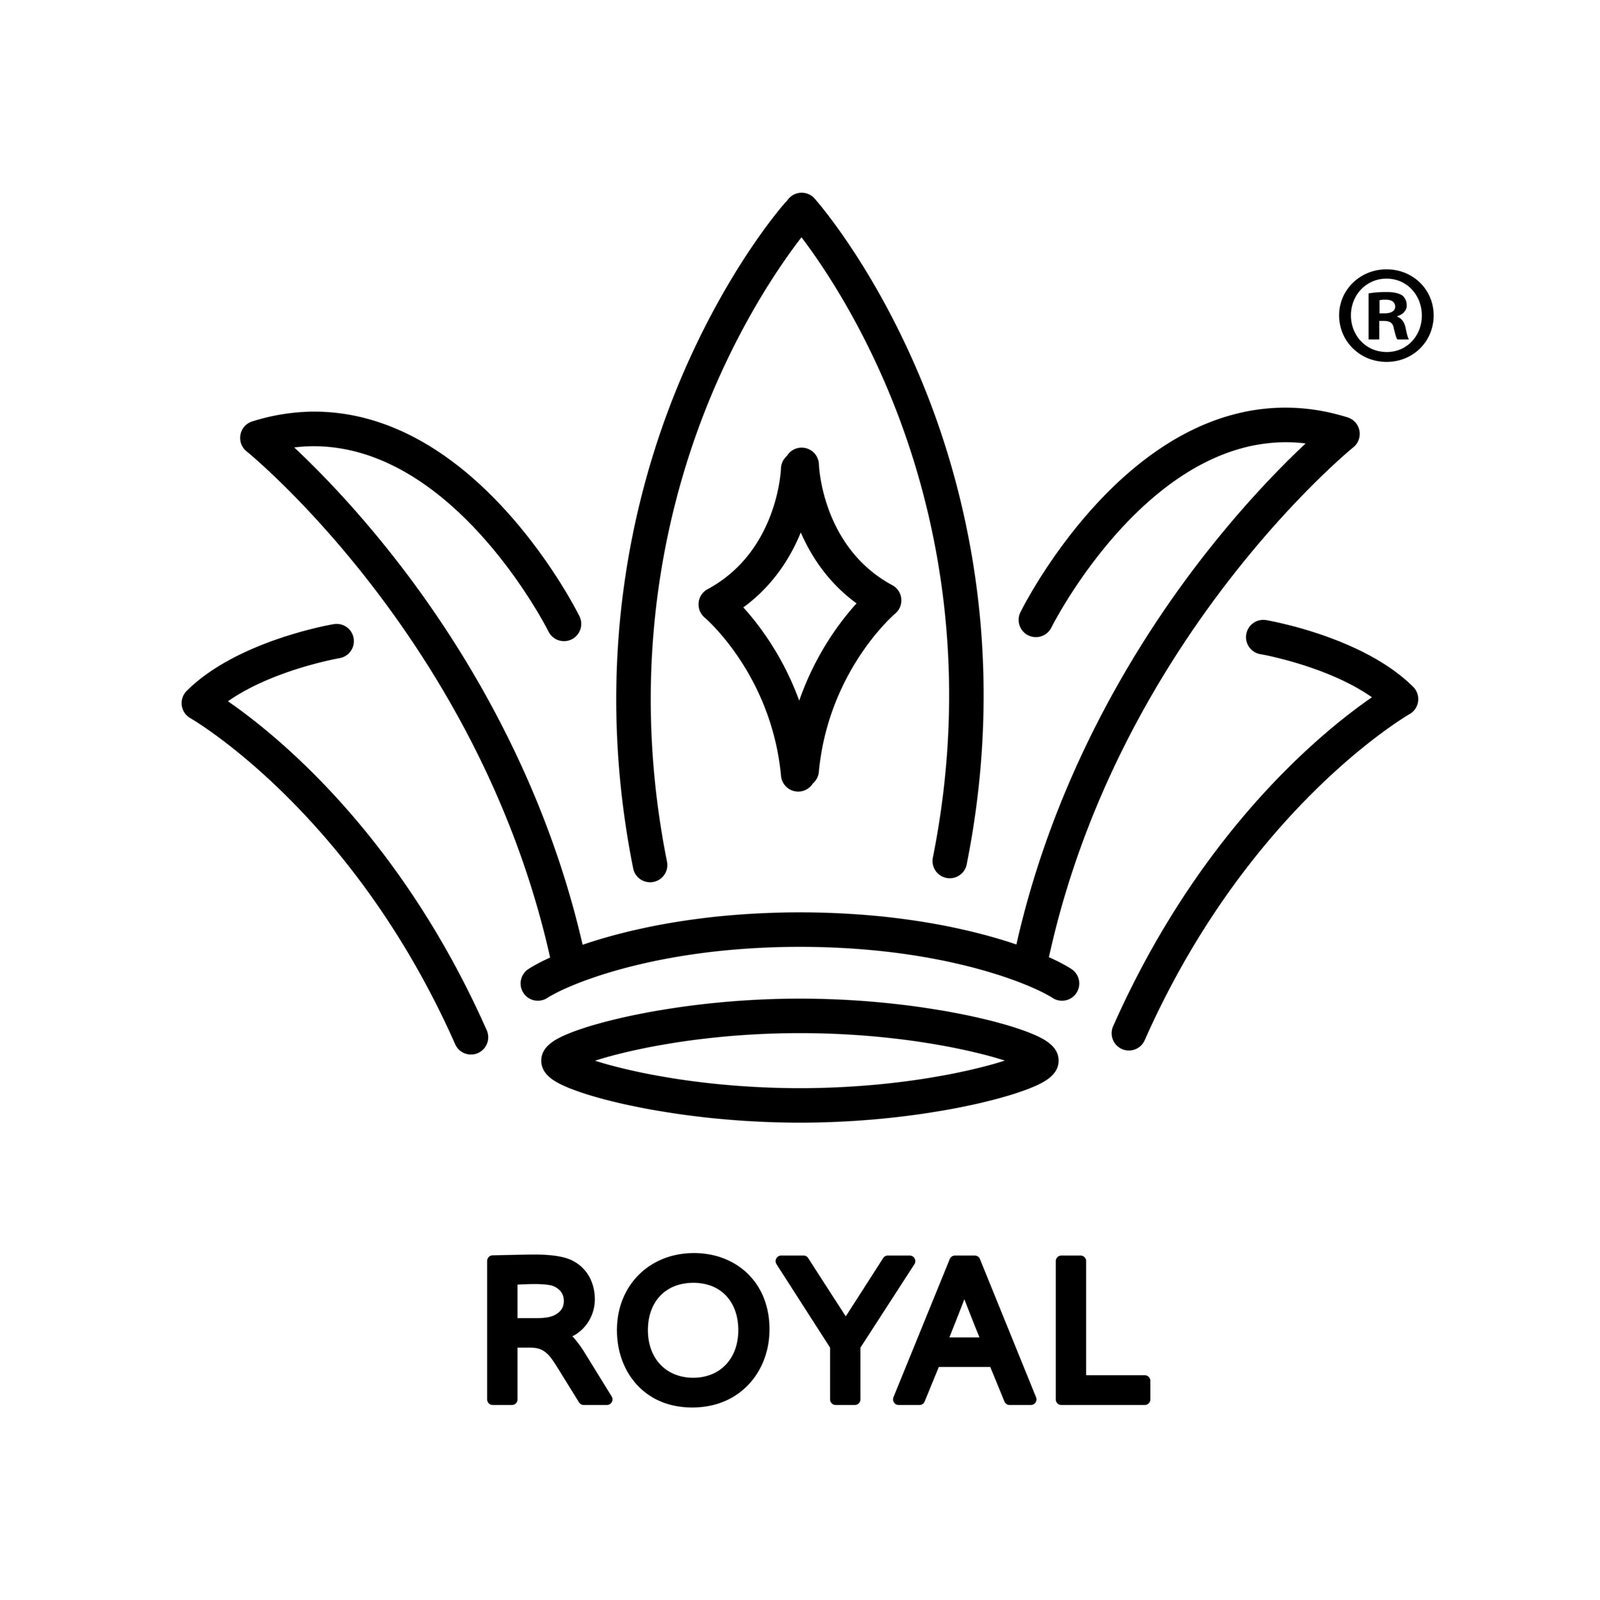 Shopsroyal logo